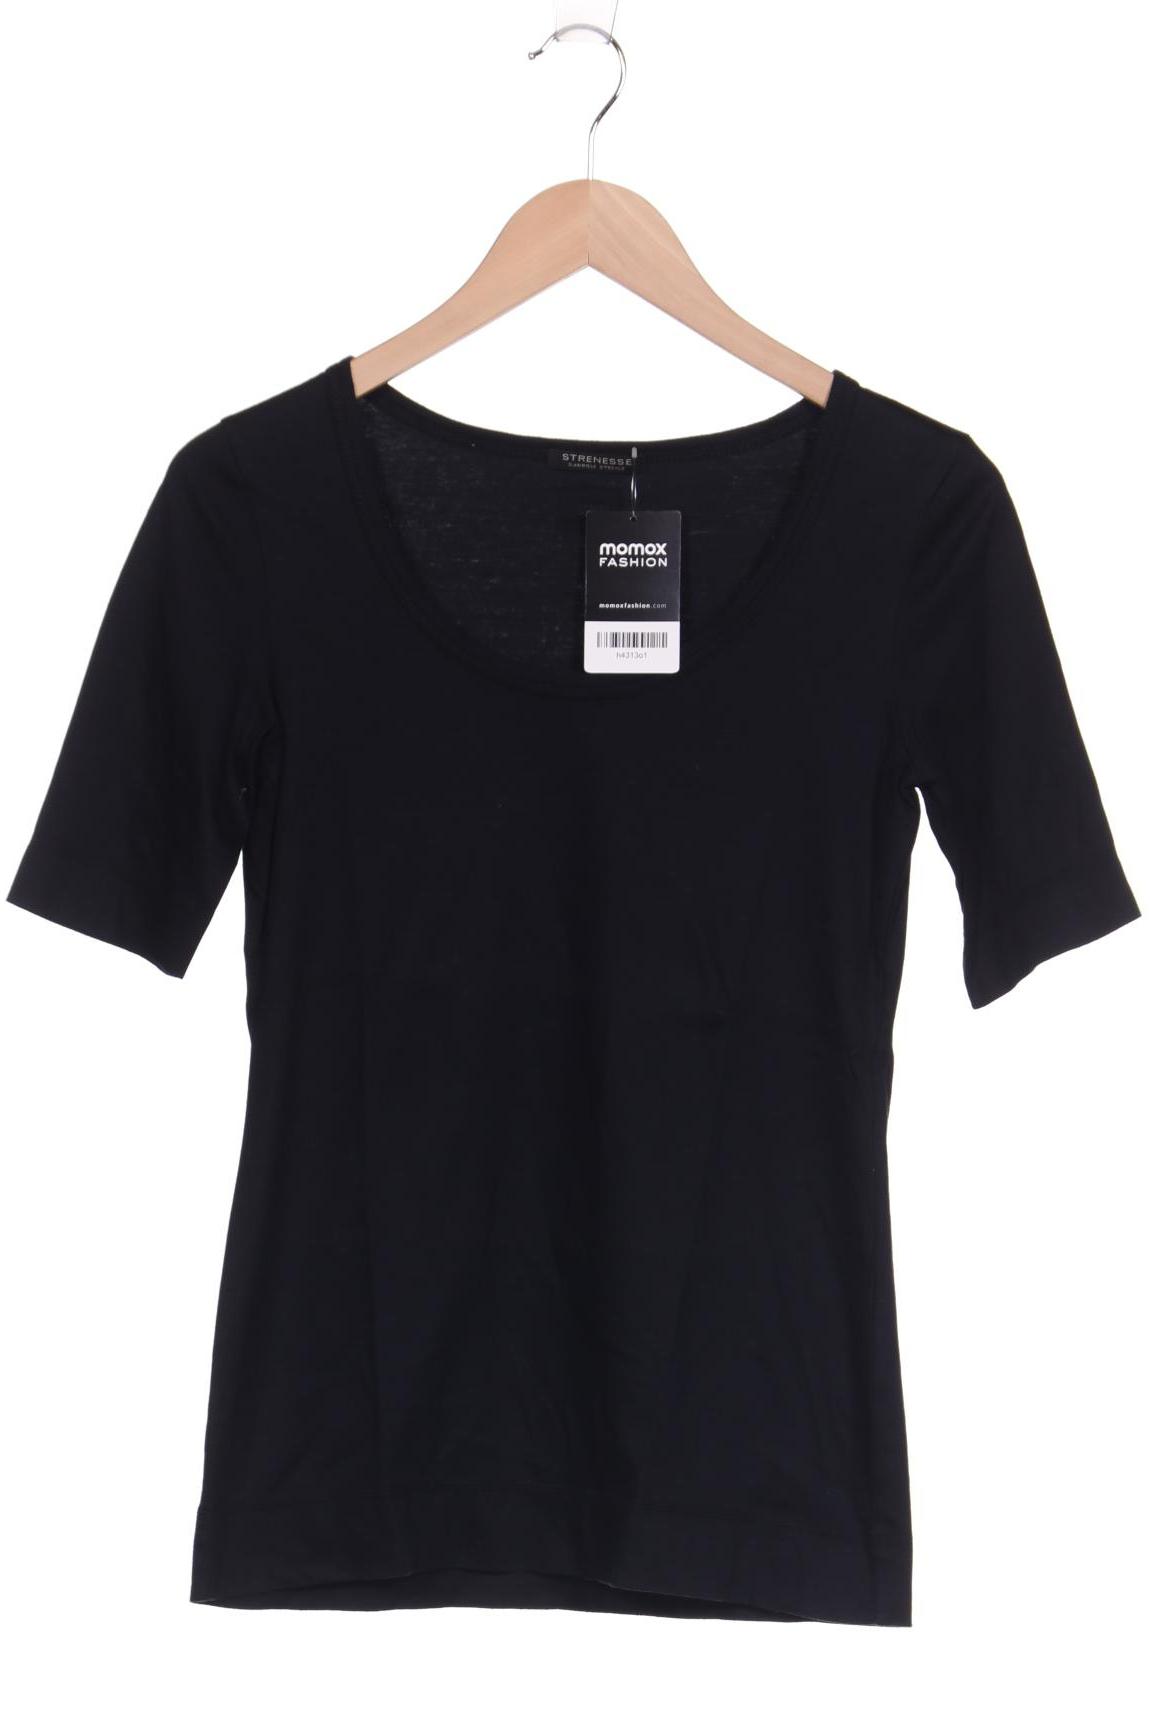 Strenesse Damen T-Shirt, schwarz von Strenesse